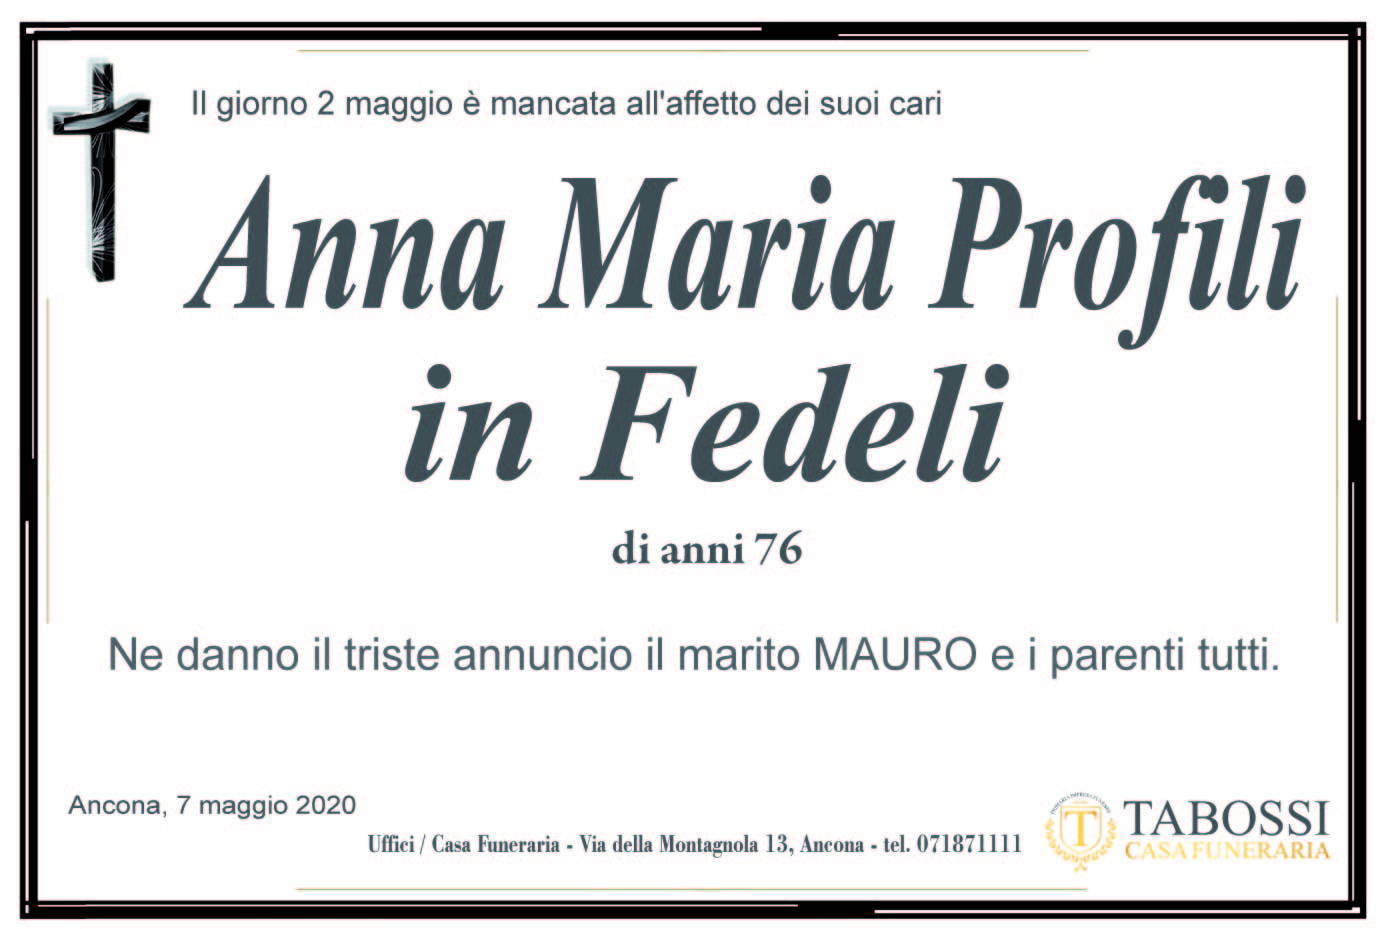 Anna Maria Profili